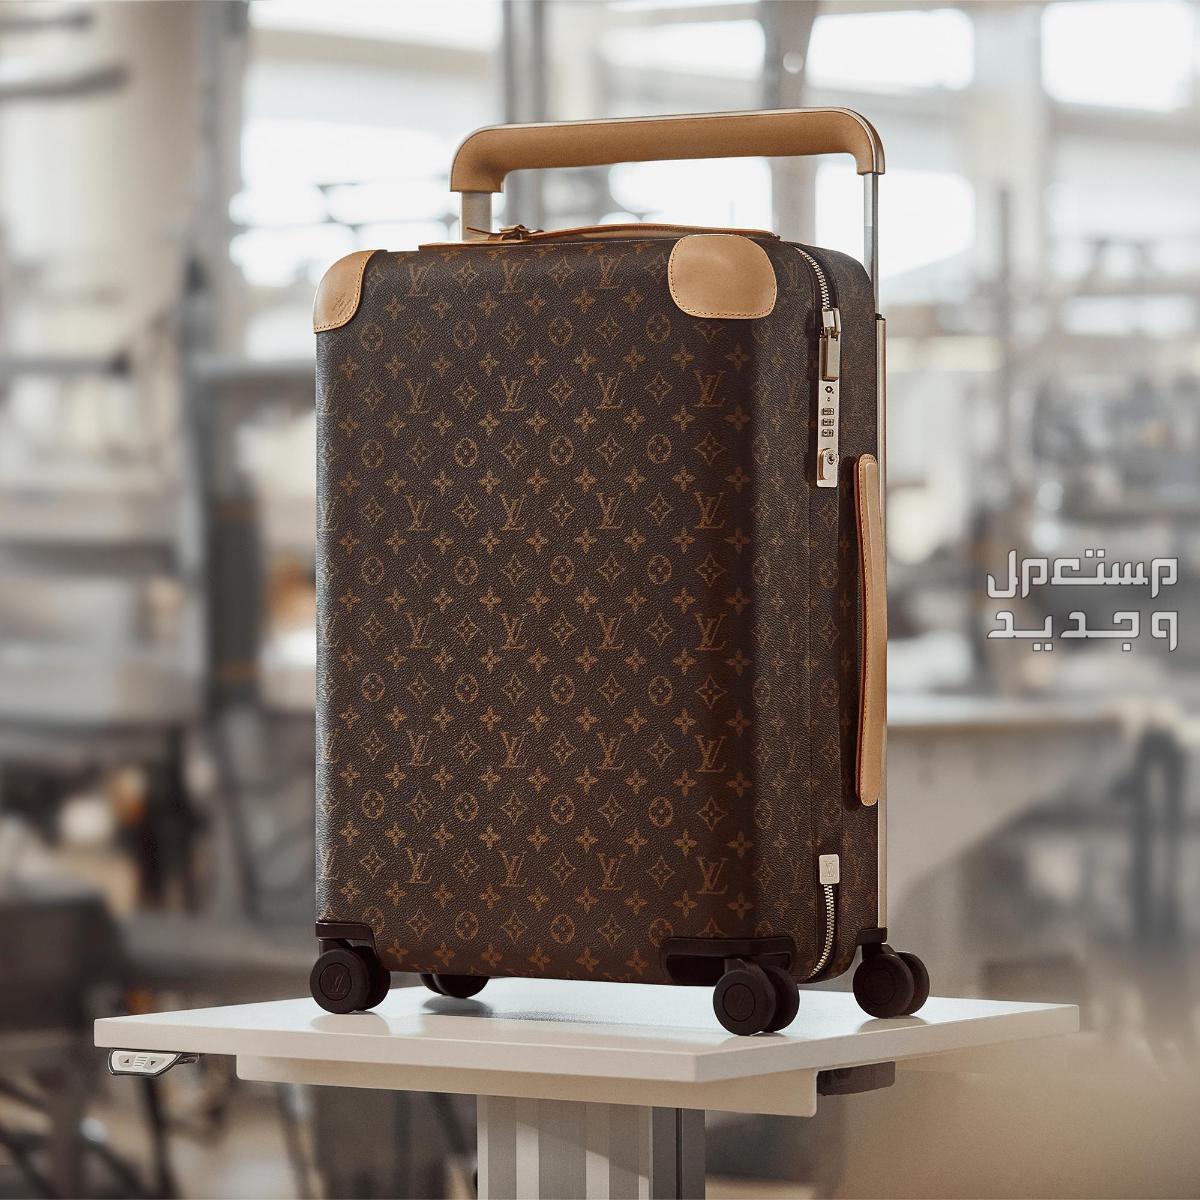 تعرف على أغلى حقيبة سفر في العالم في فلسطين تفاصيل حقيبة سفر Louis Vuitton Horizon 50